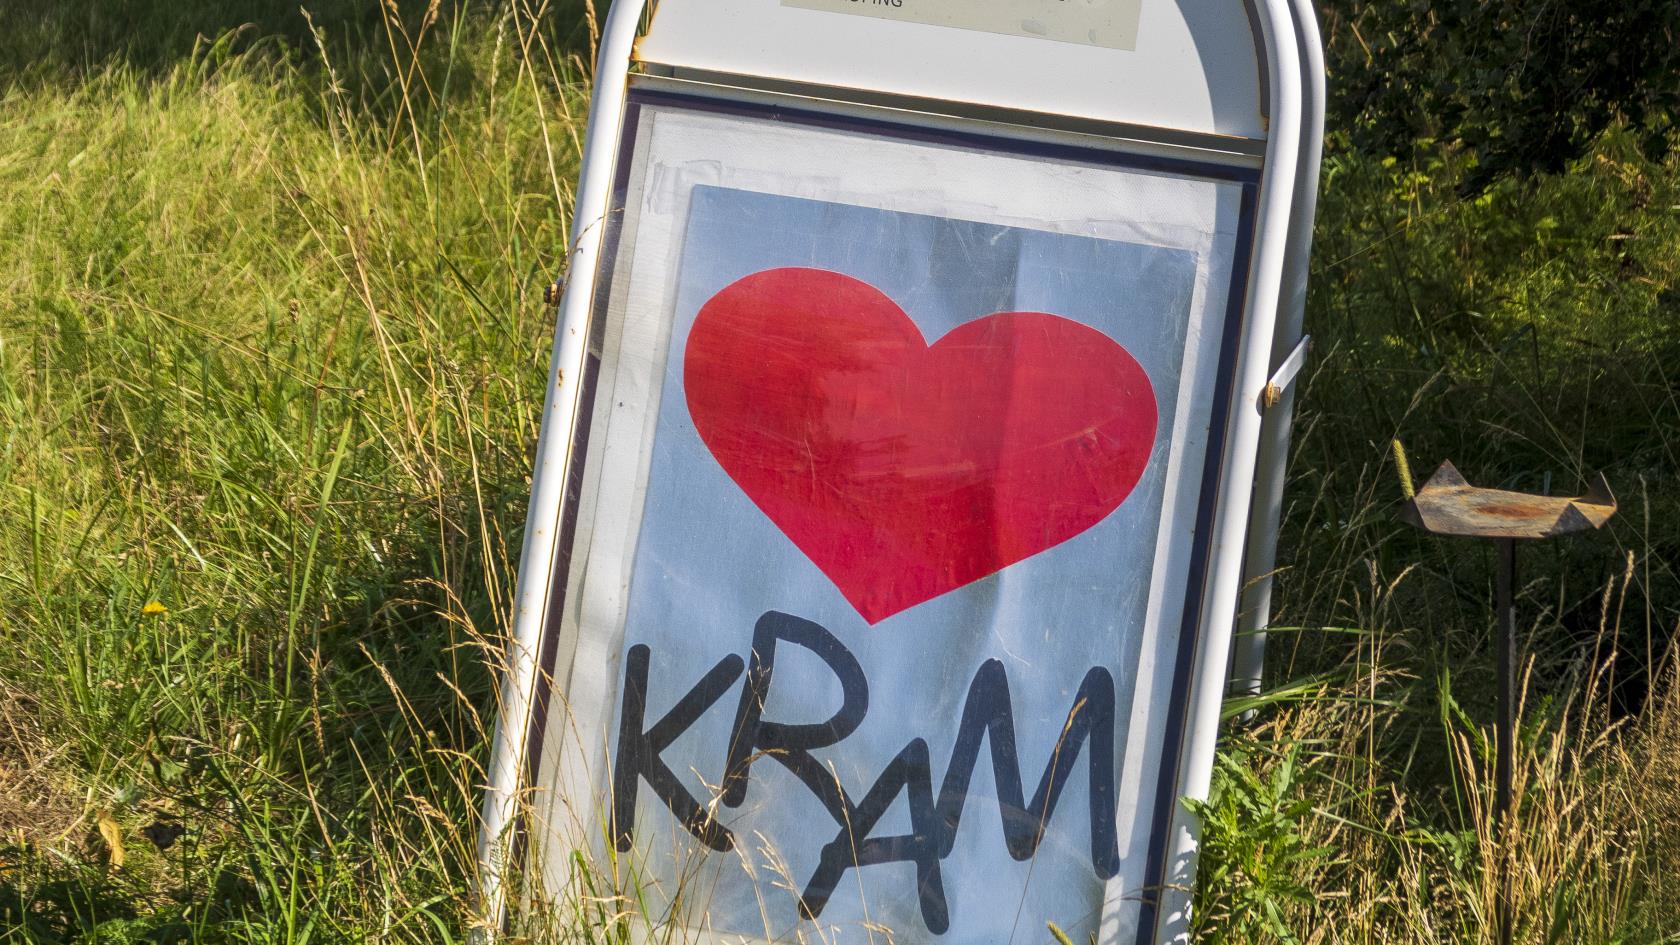 En skylt med ett hjärta och texten Kram står vid en landsväg i gräset.